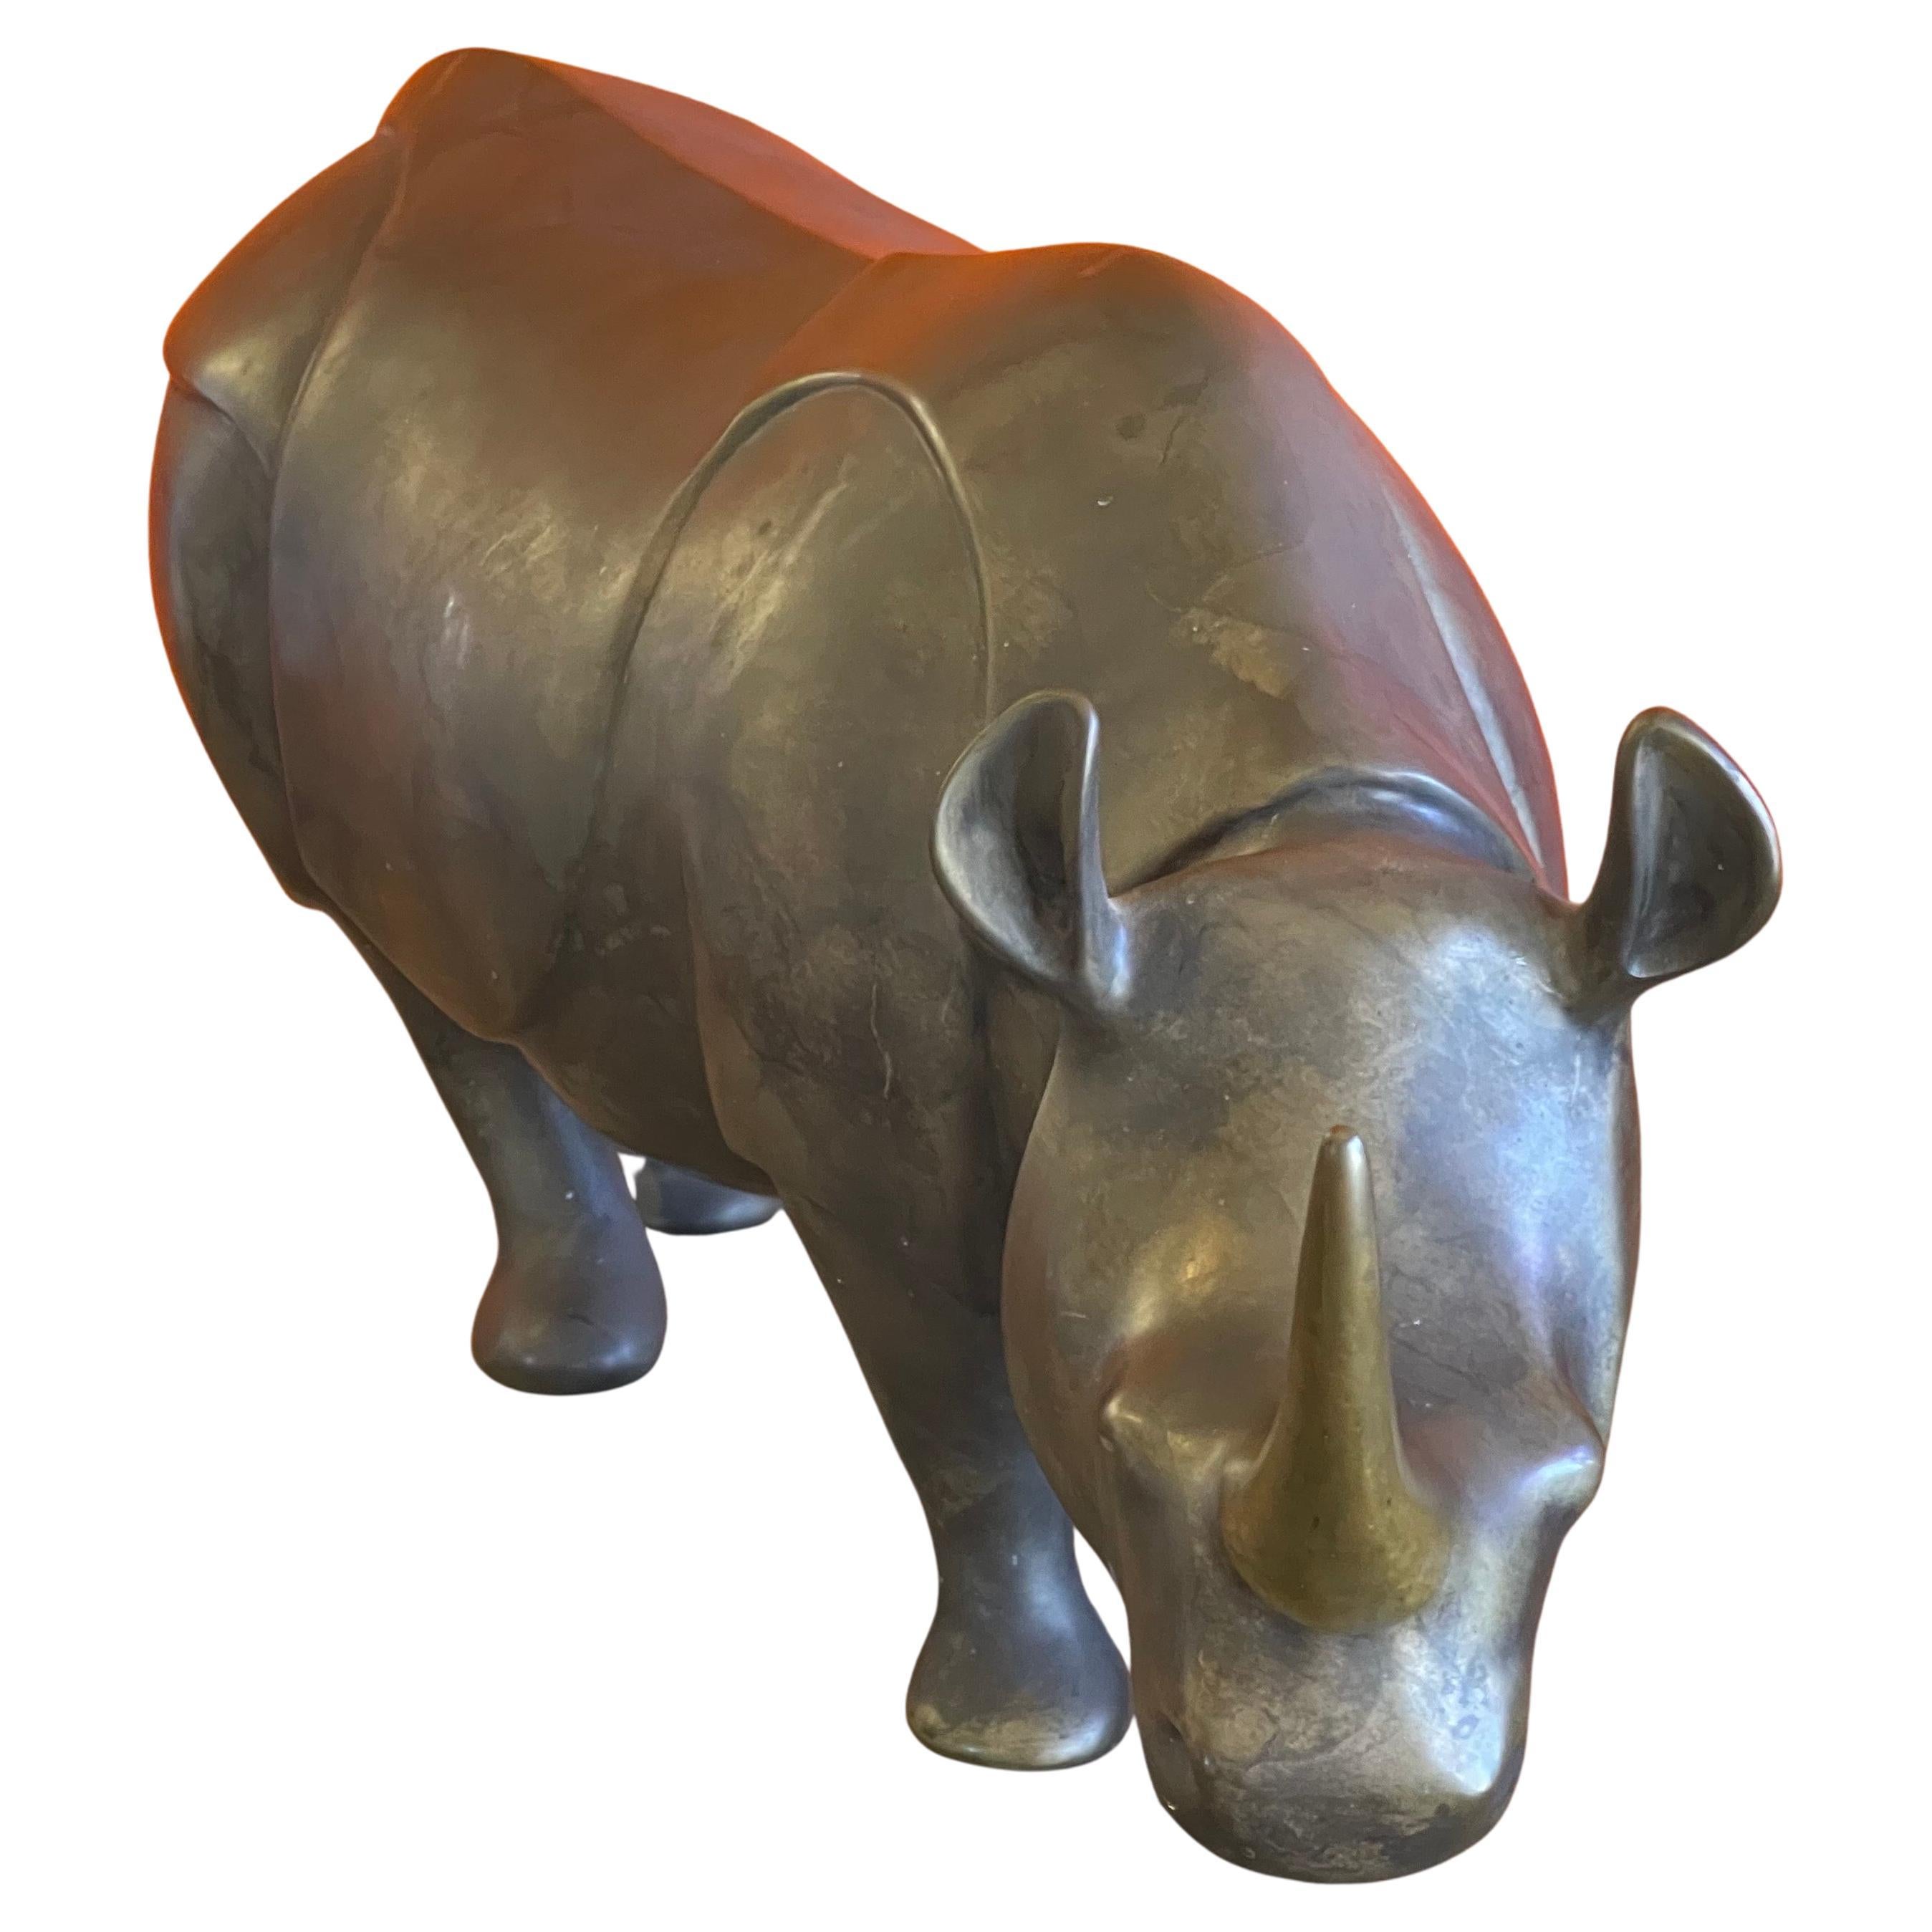 Massive sculpture de rhinocéros en bronze, épreuve d'artiste (AP), réalisée par Loet Vanderveen vers les années 1980. La pièce est en très bon état et présente une magnifique patine. Elle mesure 17 pouces de large x 6 pouces de profondeur x 10